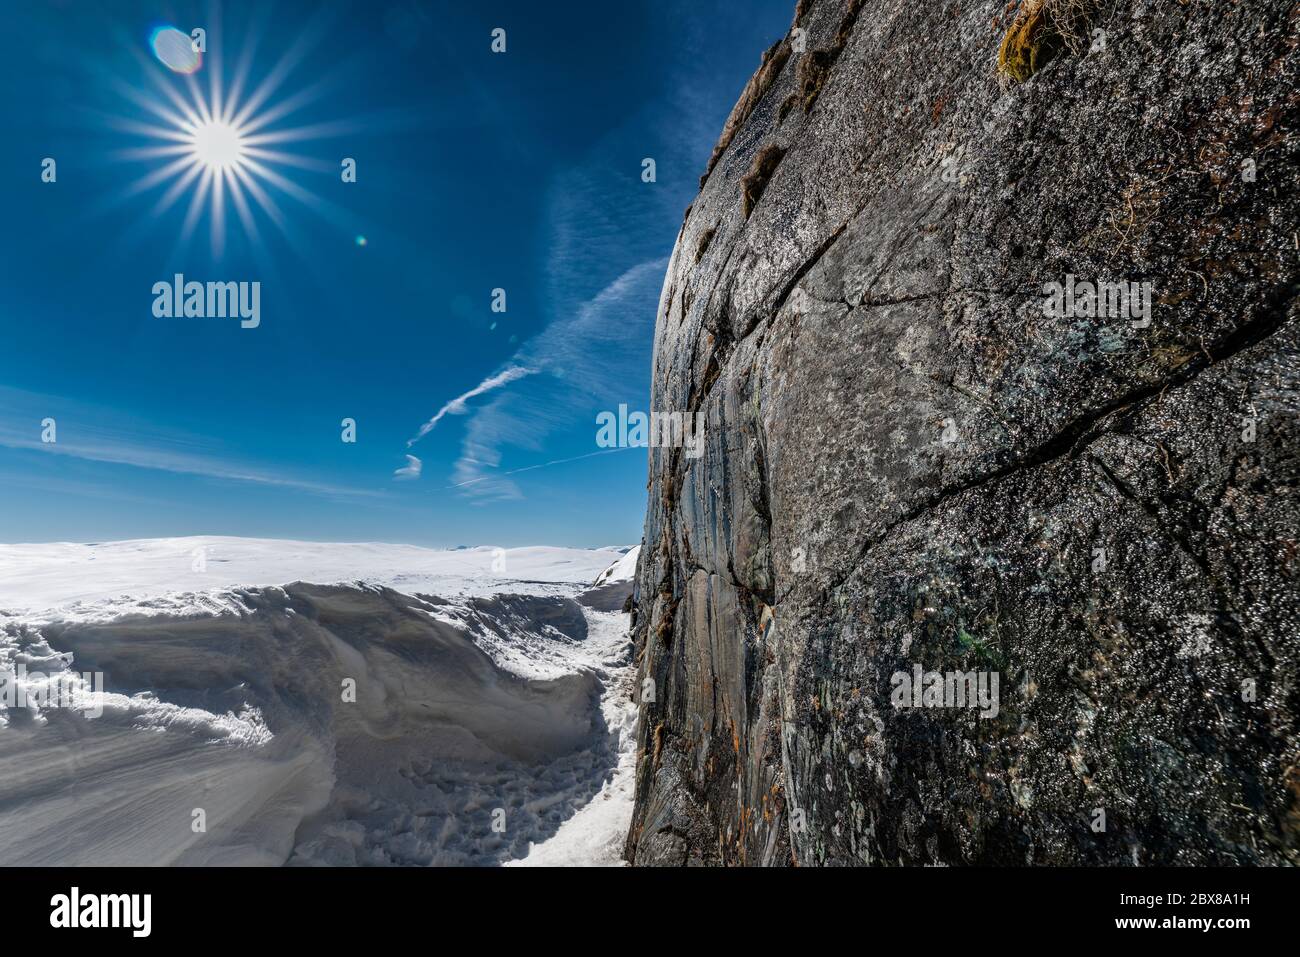 Vertikale Steinwand des Berges auf der rechten Seite werden nass im Frühling, wenn Wasser beginnt, von der Spitze nach unten zu laufen. Helle Sonne und noch viel Schnee Stockfoto